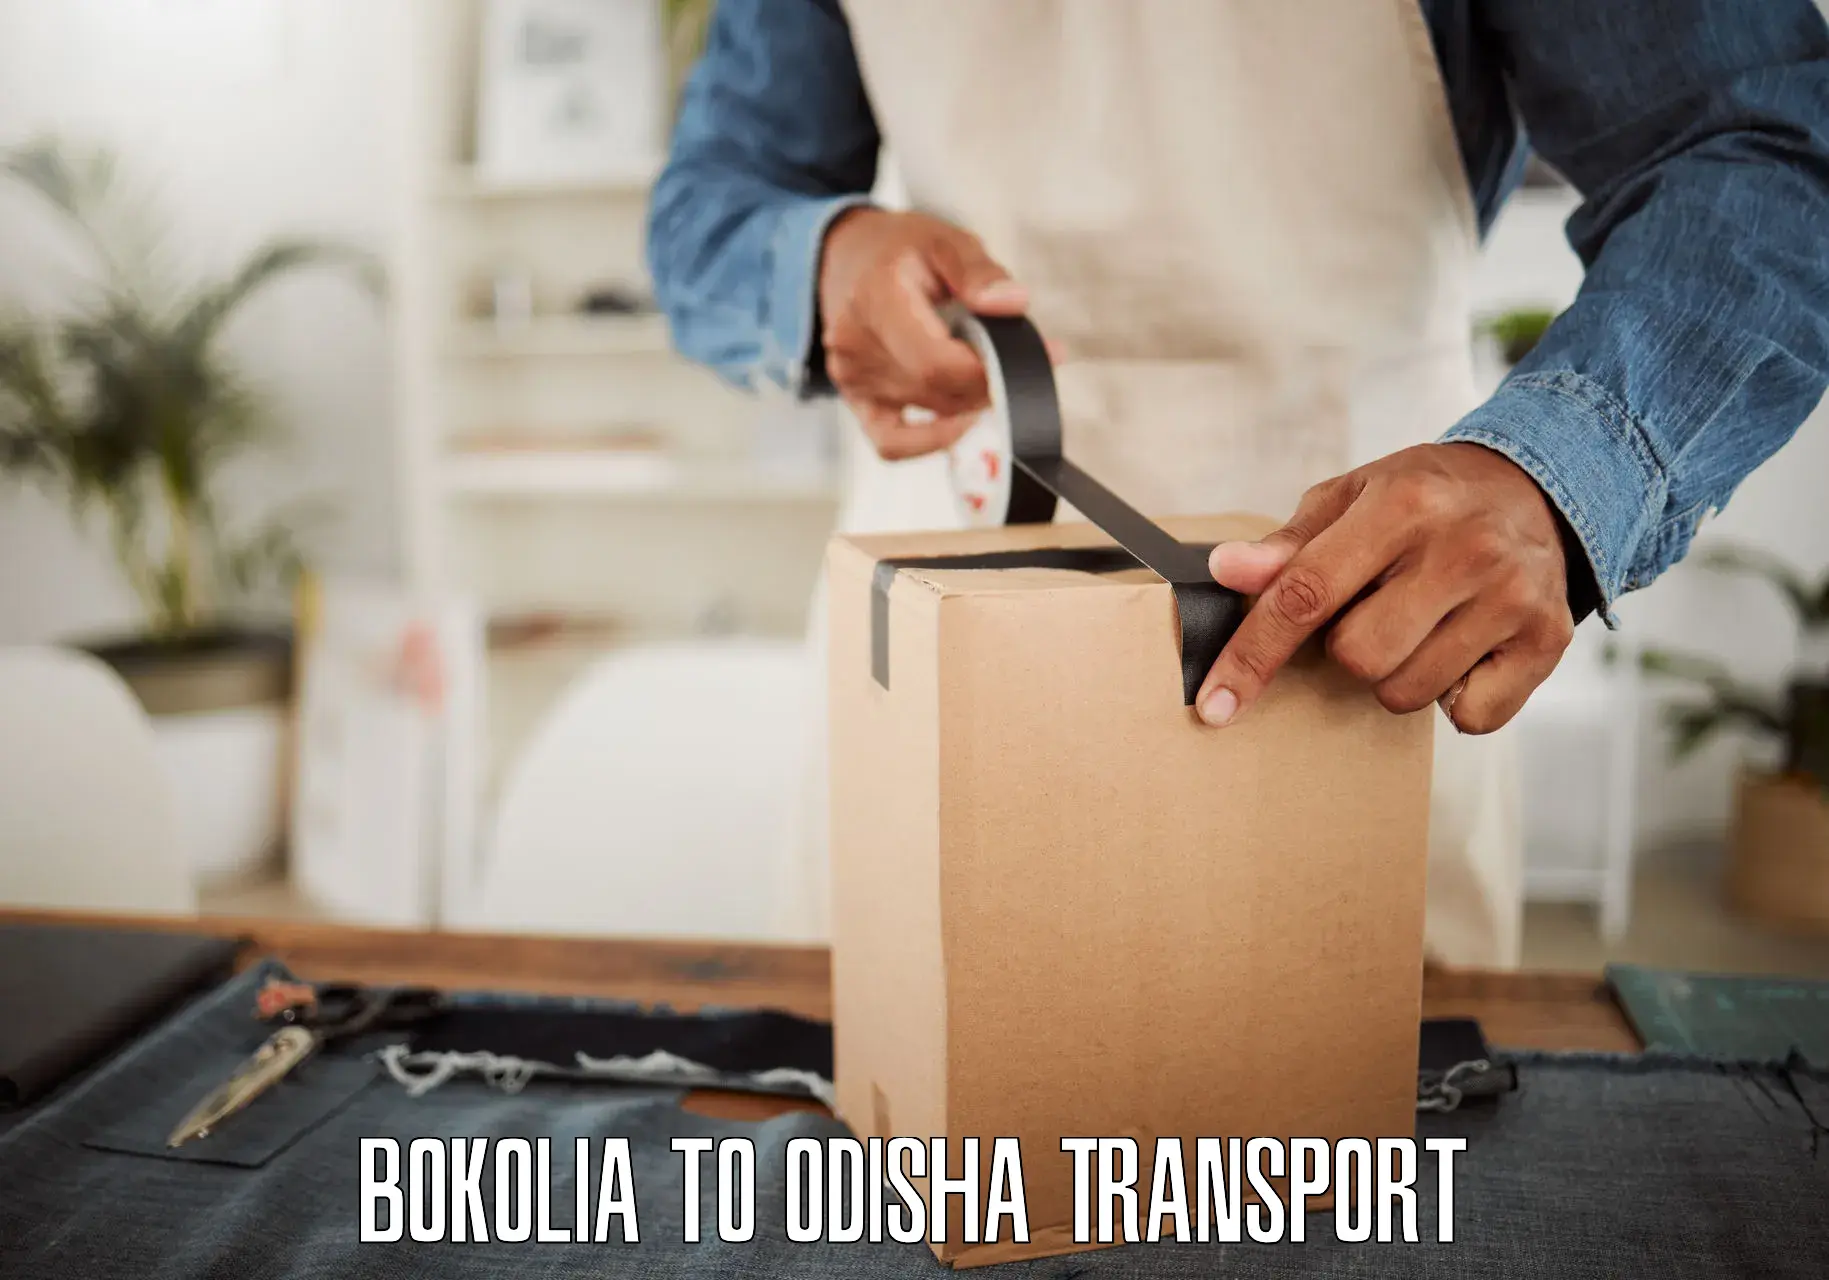 Delivery service in Bokolia to Kesinga